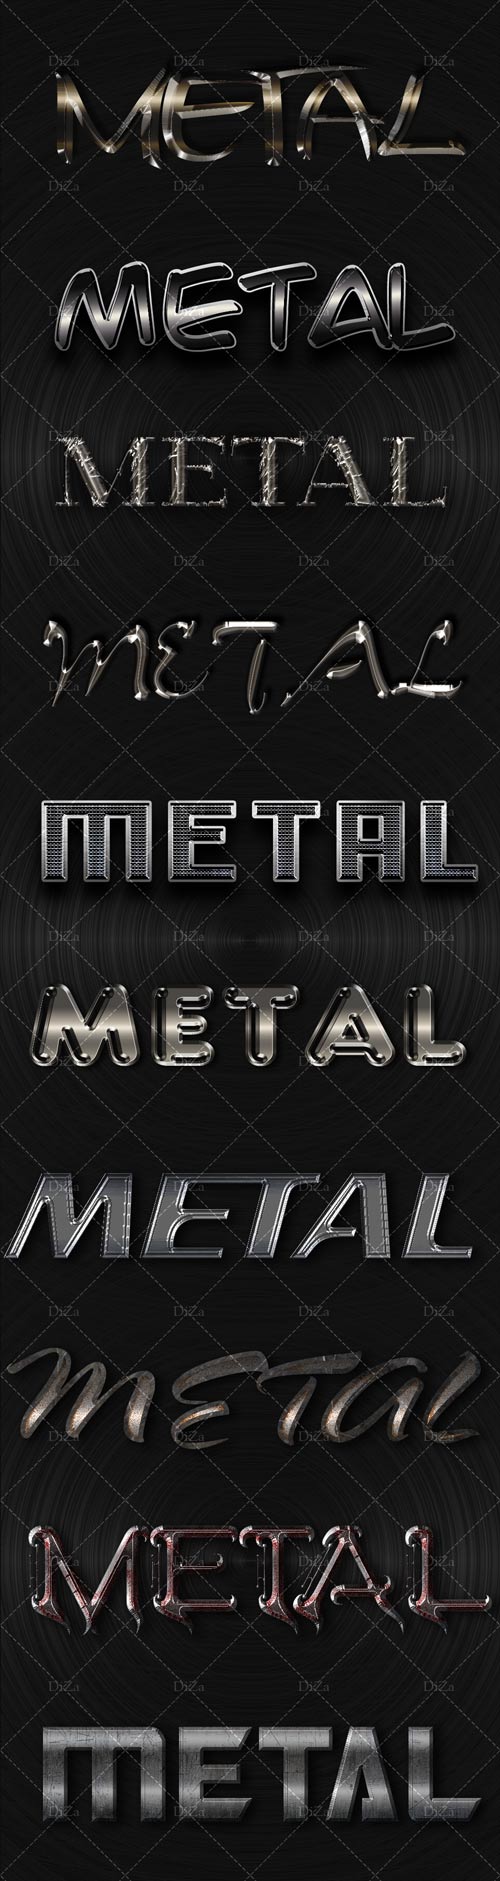 10 modern metal styles